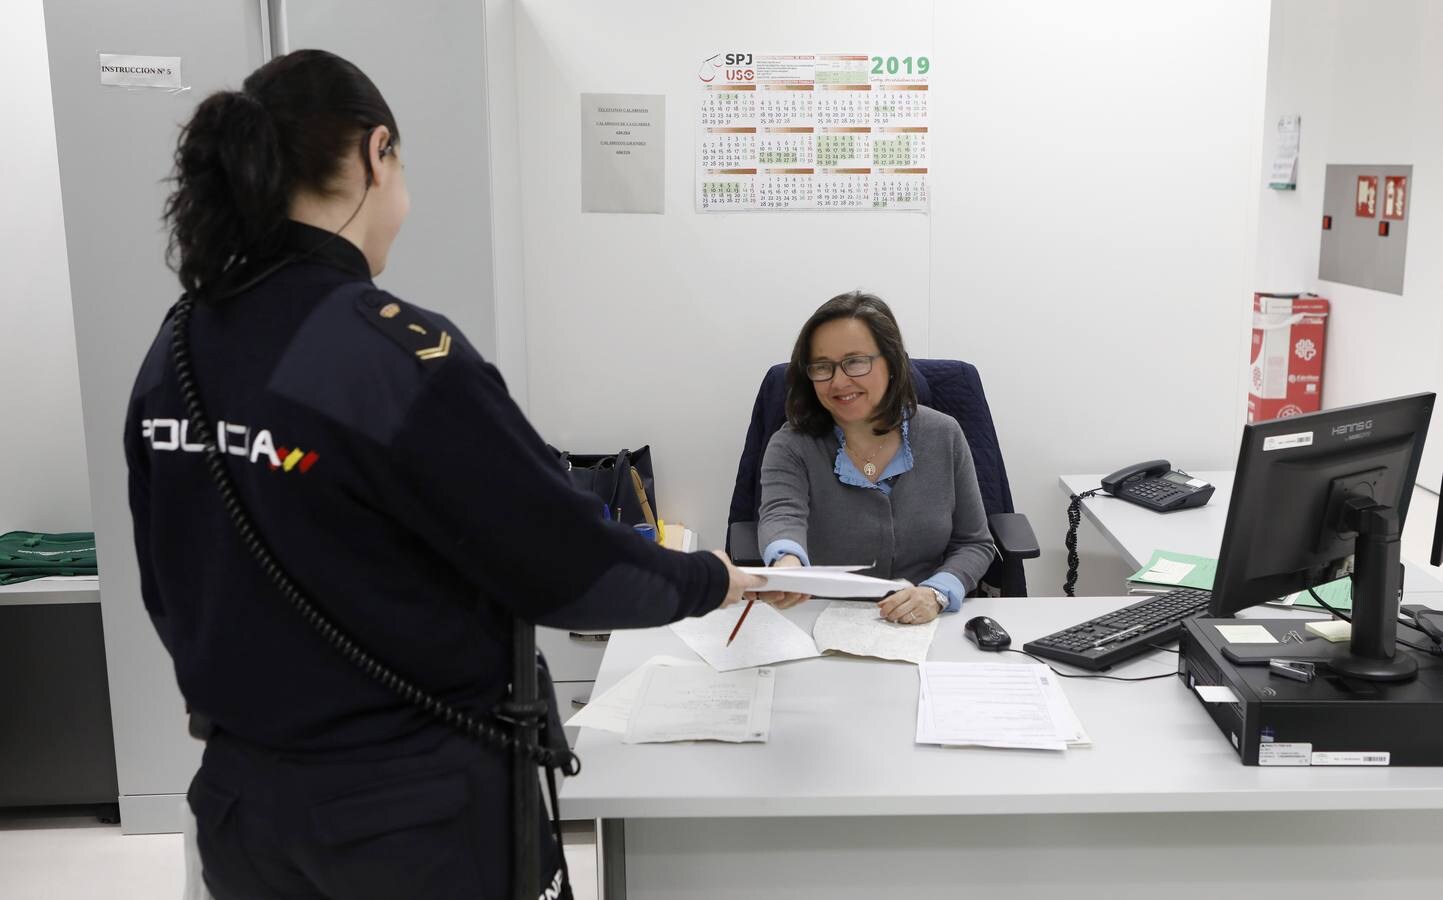 La apertura del Juzgado de Guardia 24 horas de Córdoba, en imágenes